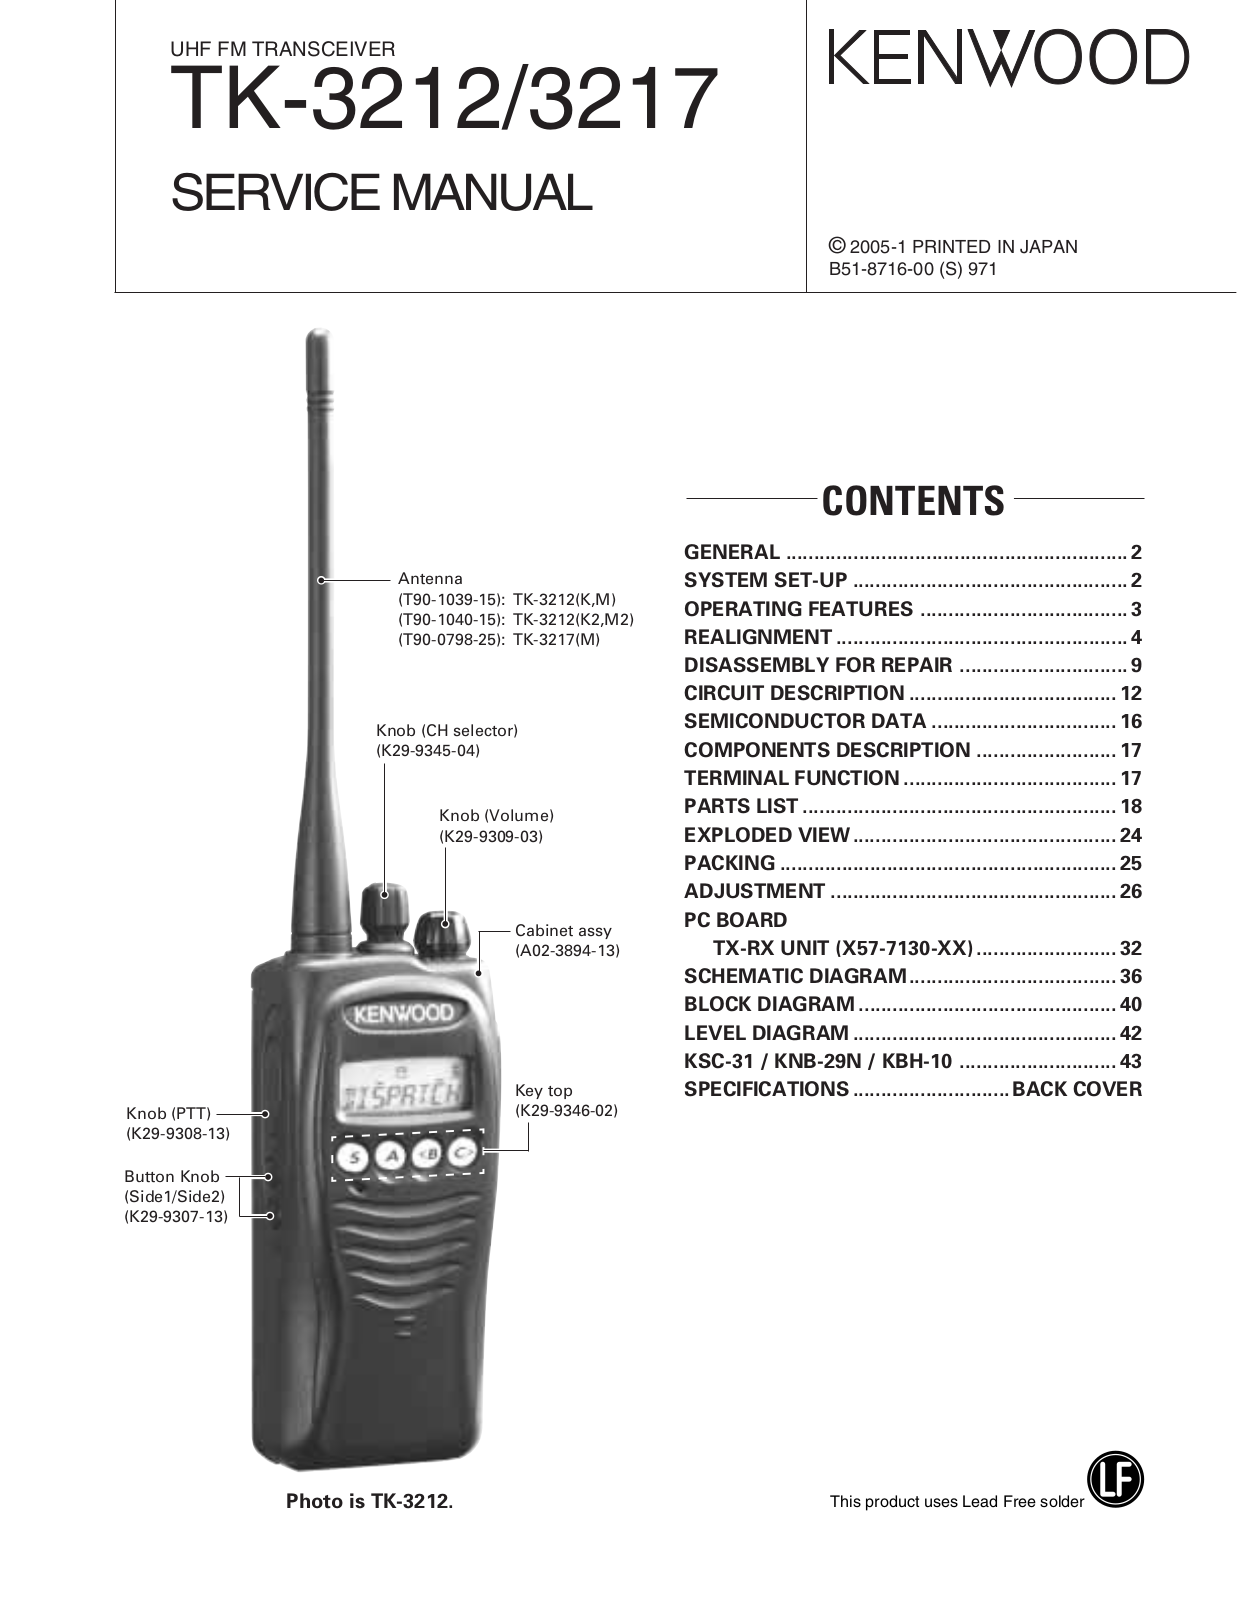 Kenwood TK-3217, TK-3212 Service Manual